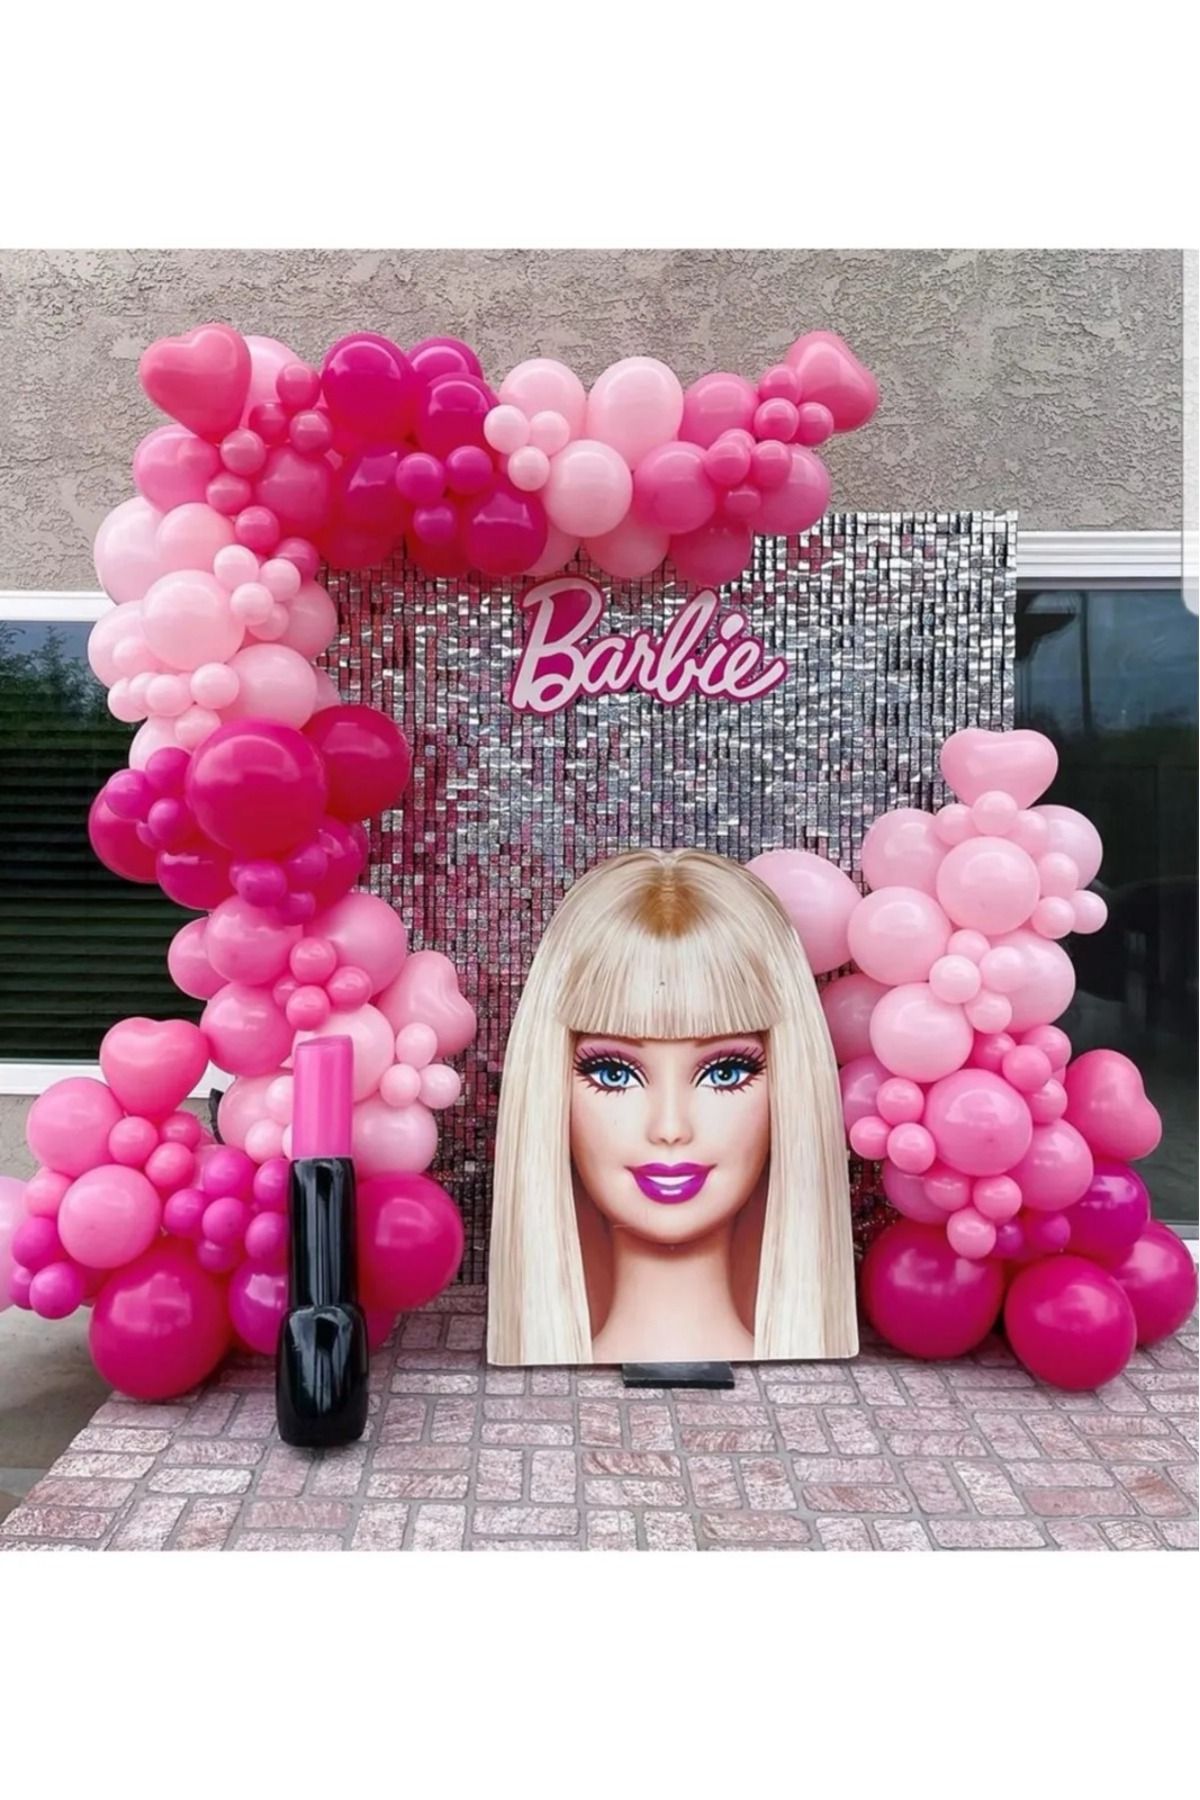 asöy Barbie Doğum Günü Balon Zinciri Seti Pastel Fuşya Pastel Şeker Pembe Makaron Pembe Balon